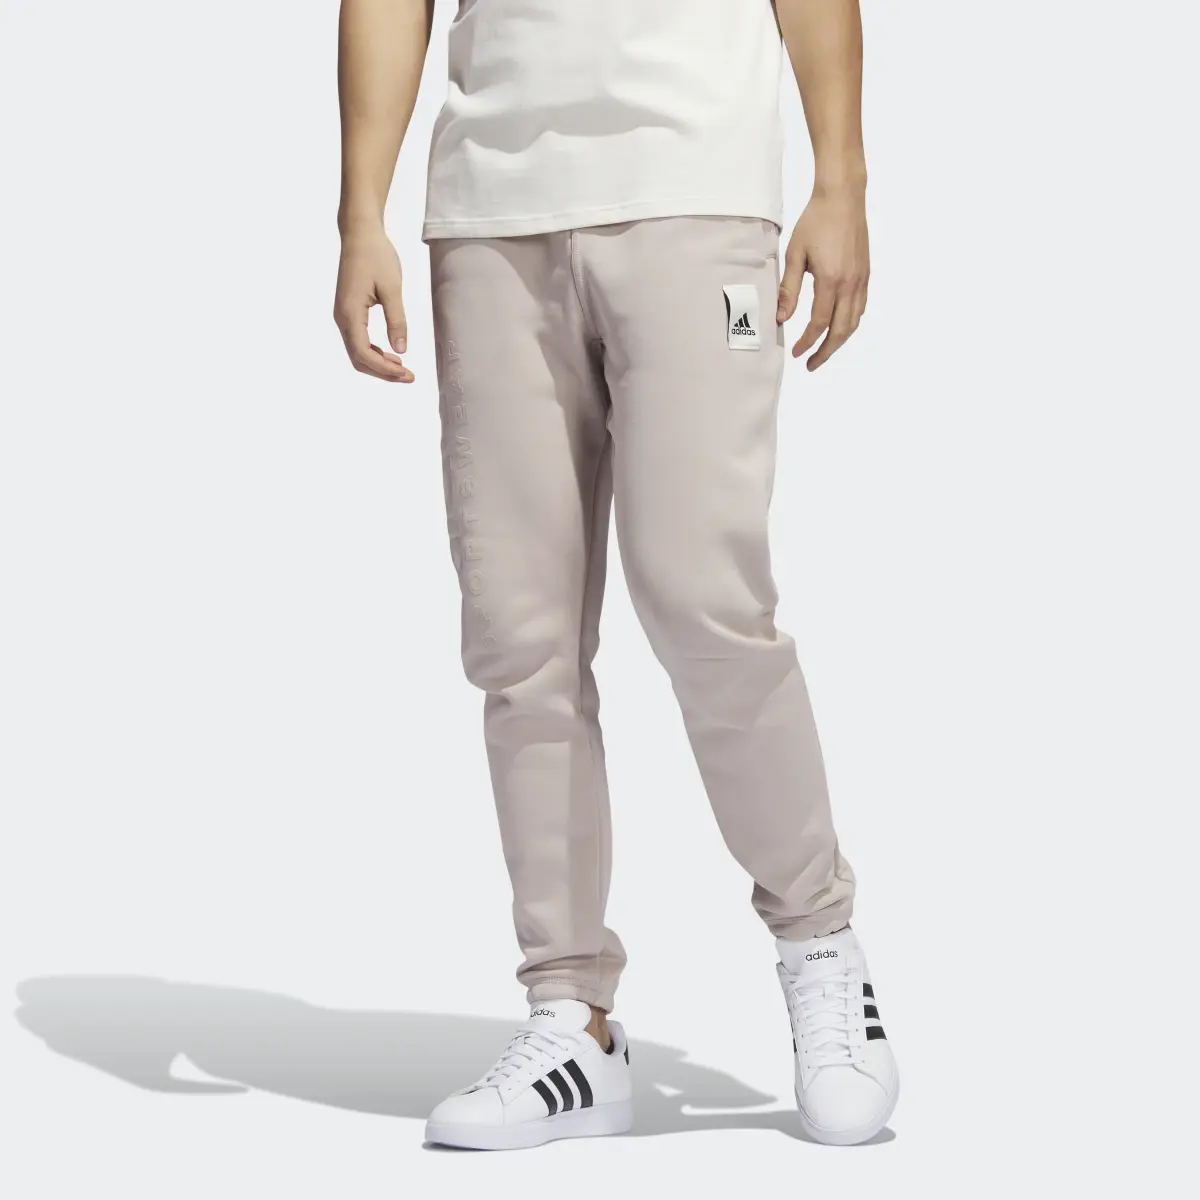 Adidas Lounge Fleece Pants. 1